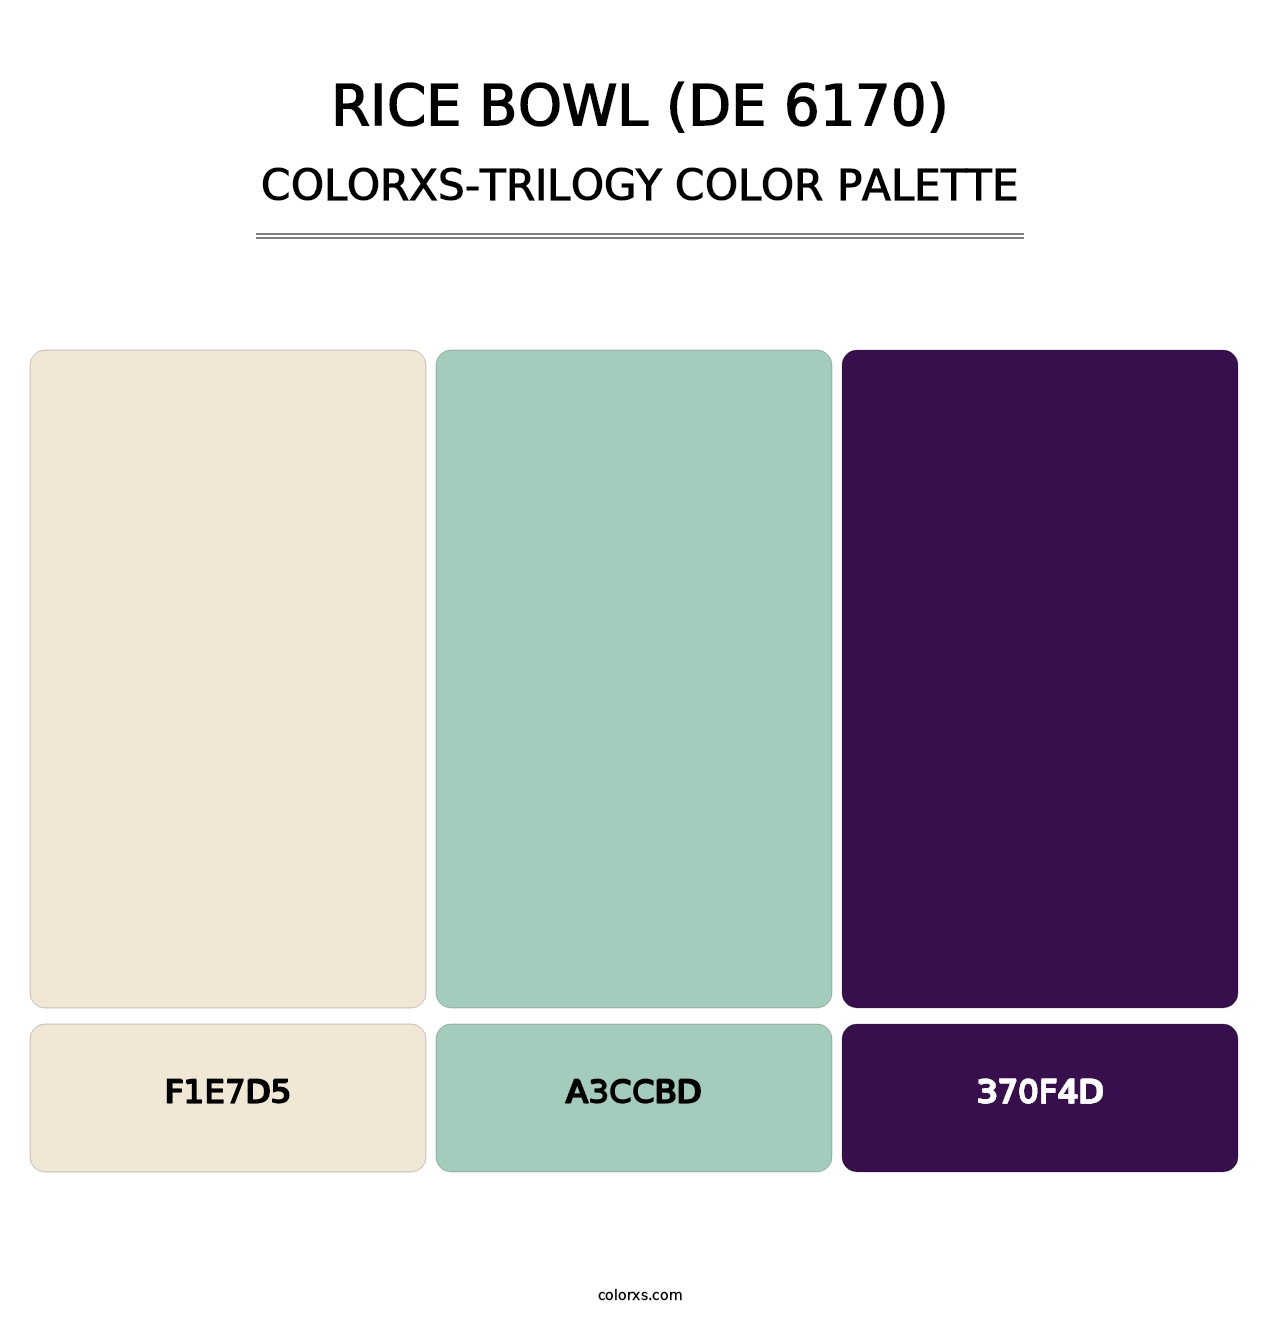 Rice Bowl (DE 6170) - Colorxs Trilogy Palette